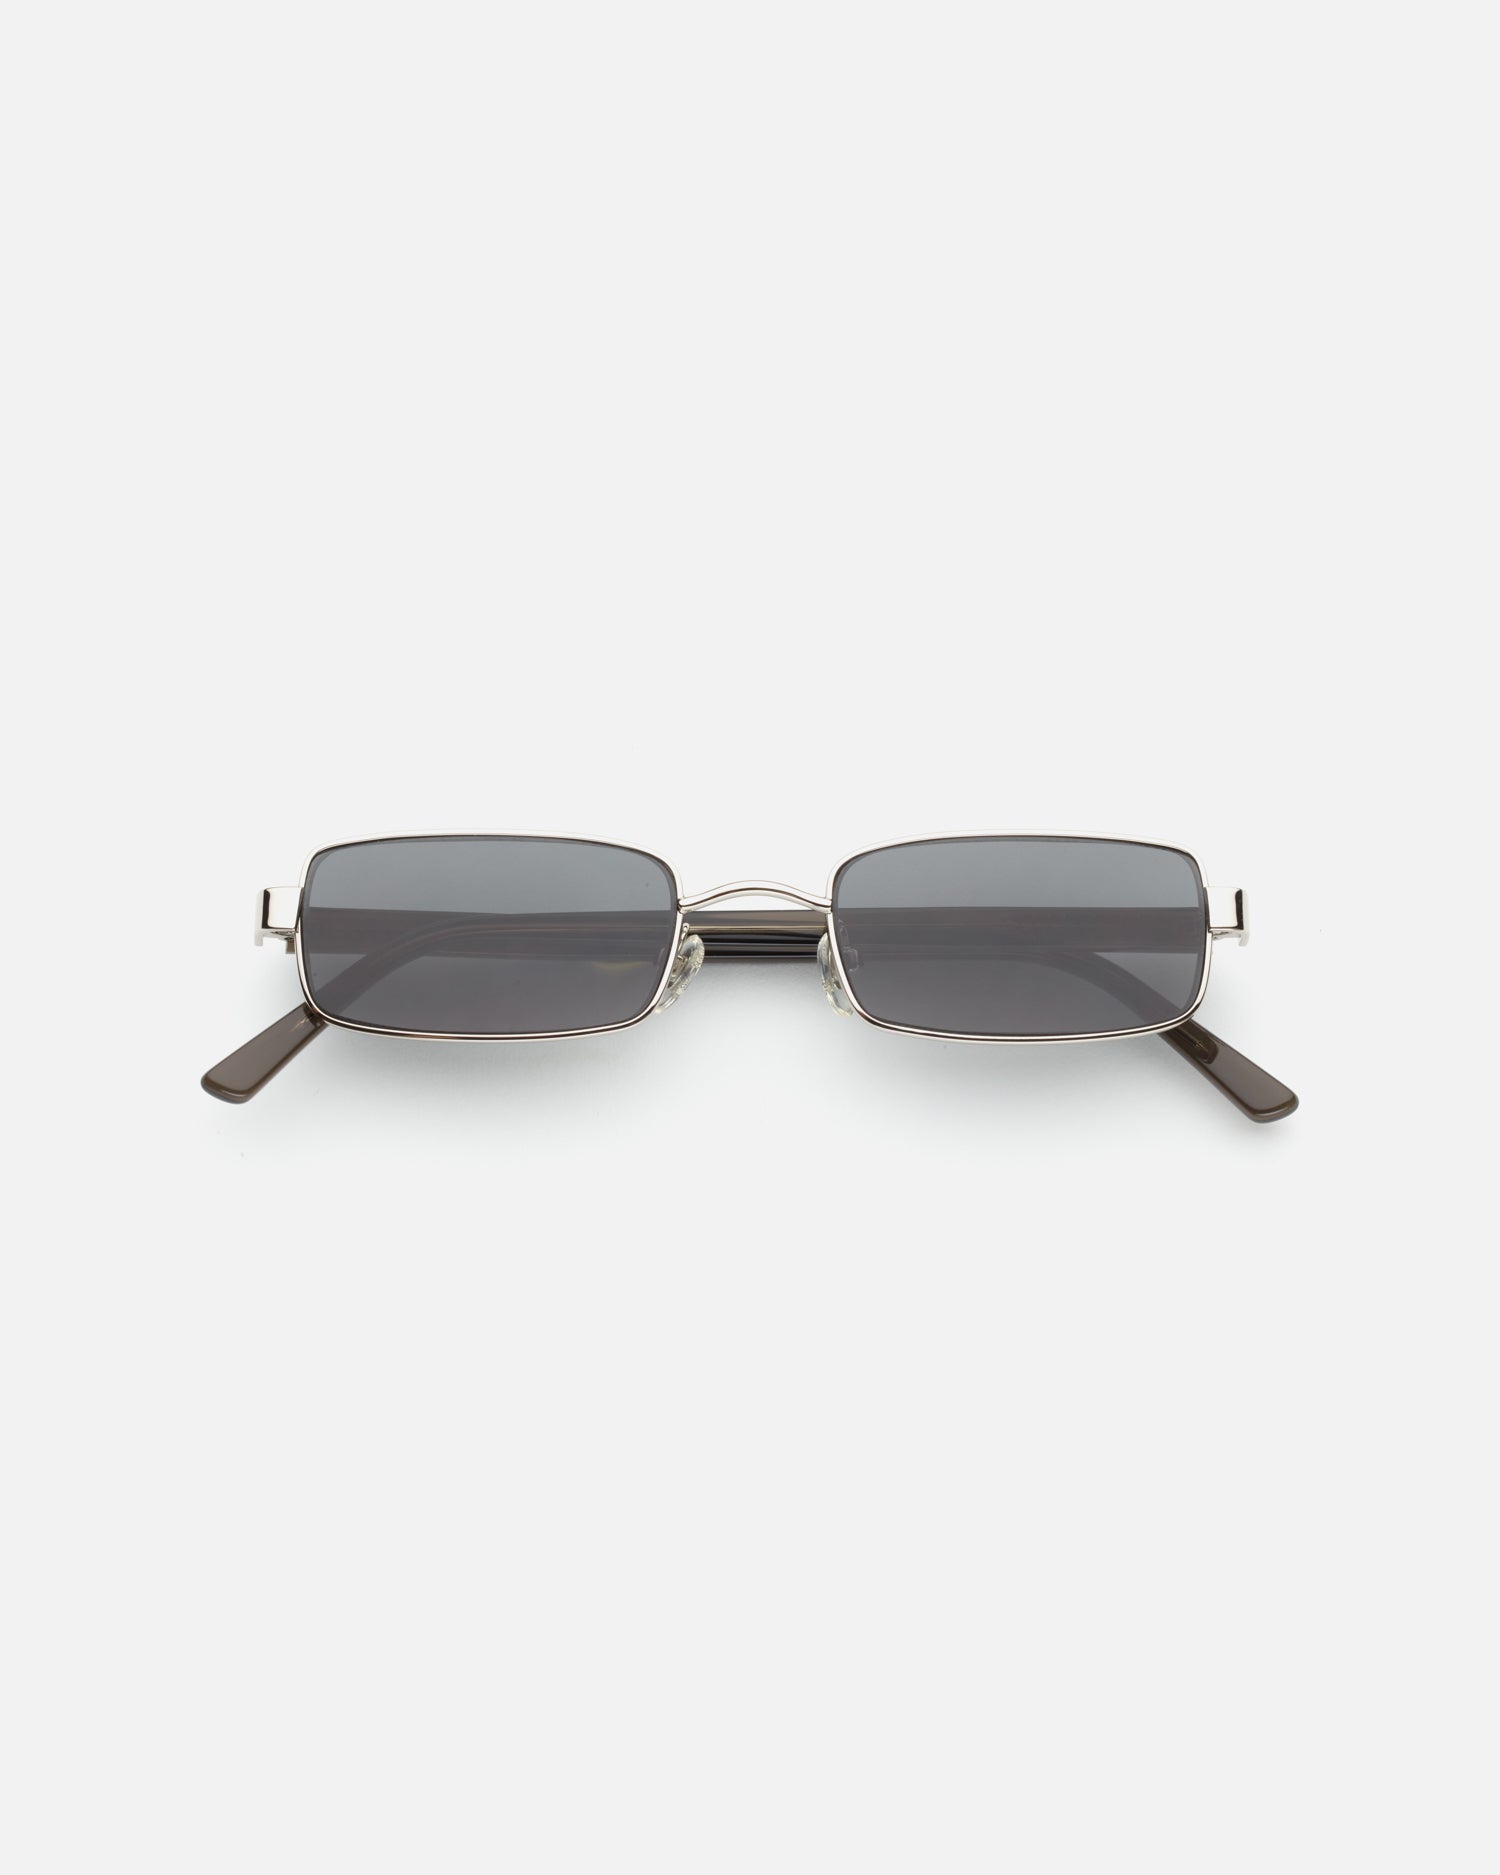 Nina Sunglasses in Silver by LU GOLDIE Eyewear